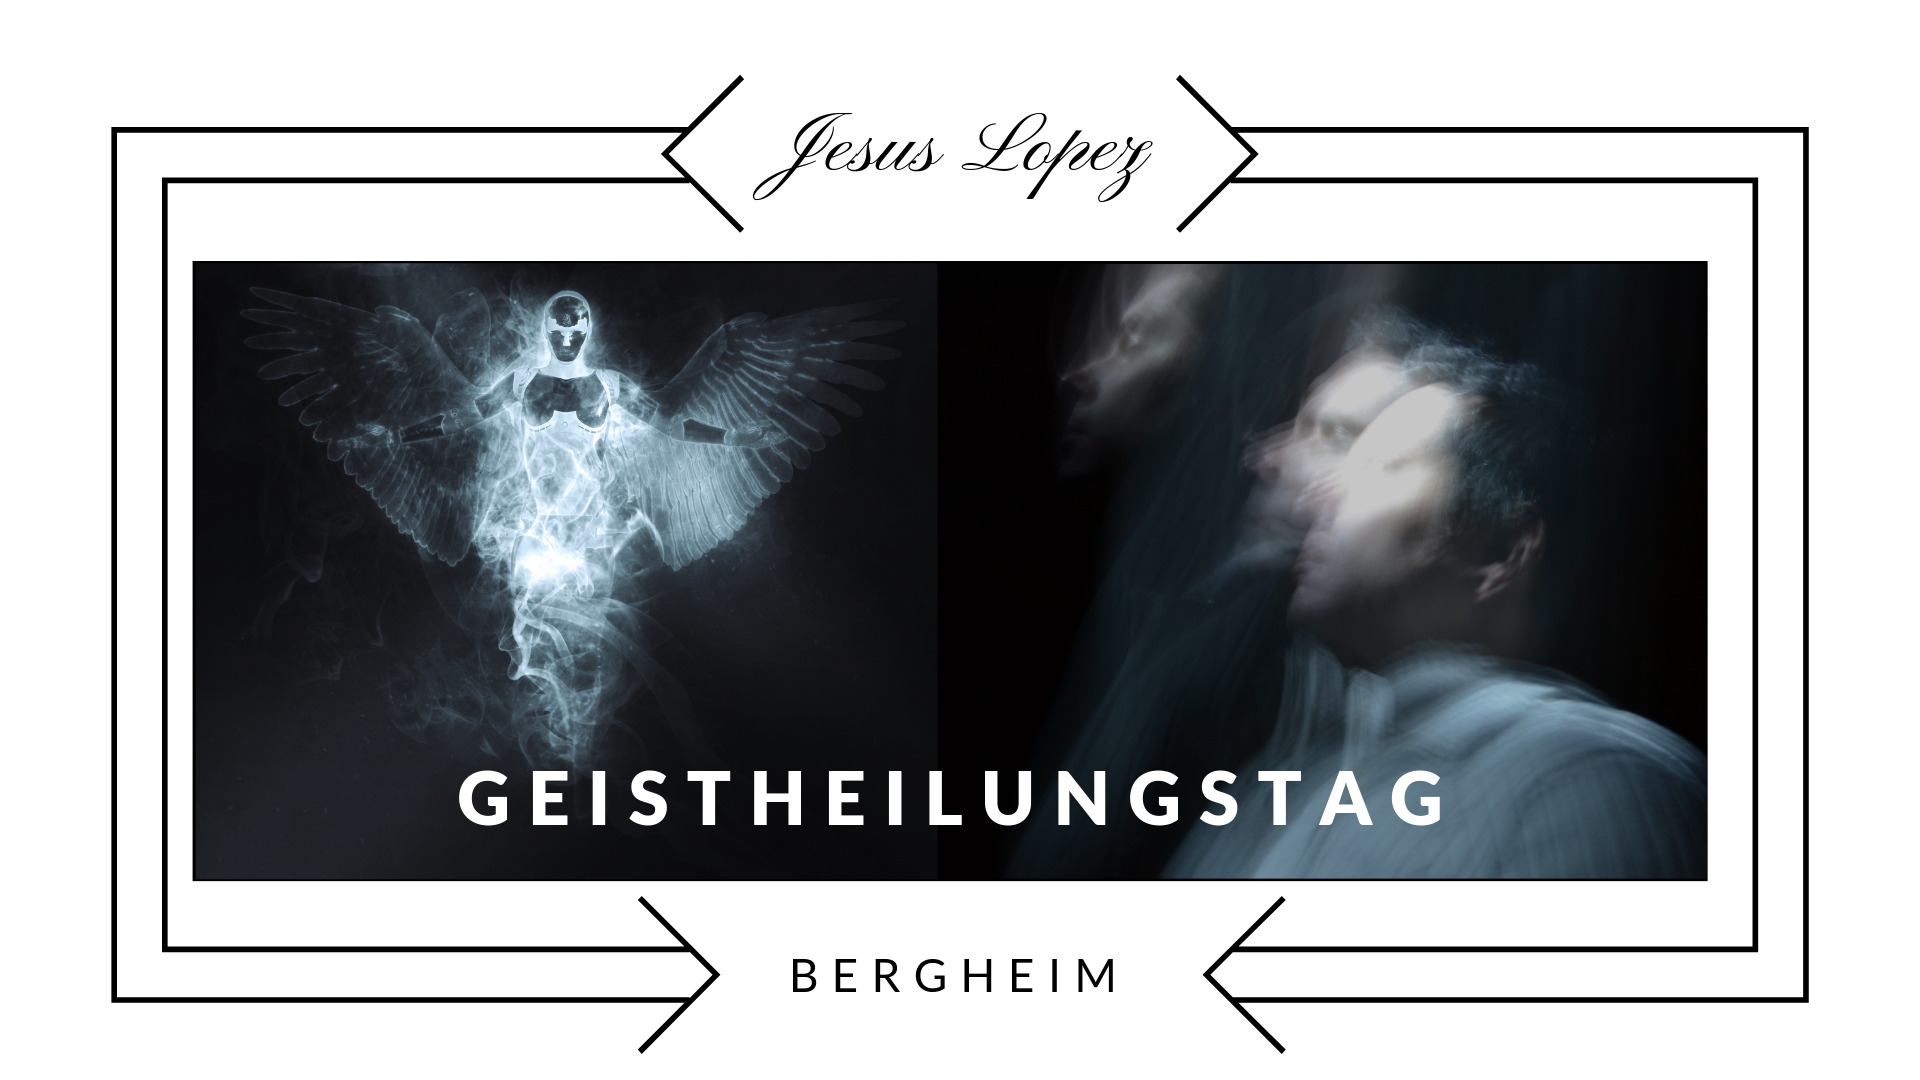 Einmal im Monat findet in Bergheim der Geistheilungstag in Bergheim statt.
www.geistheilungstag.de